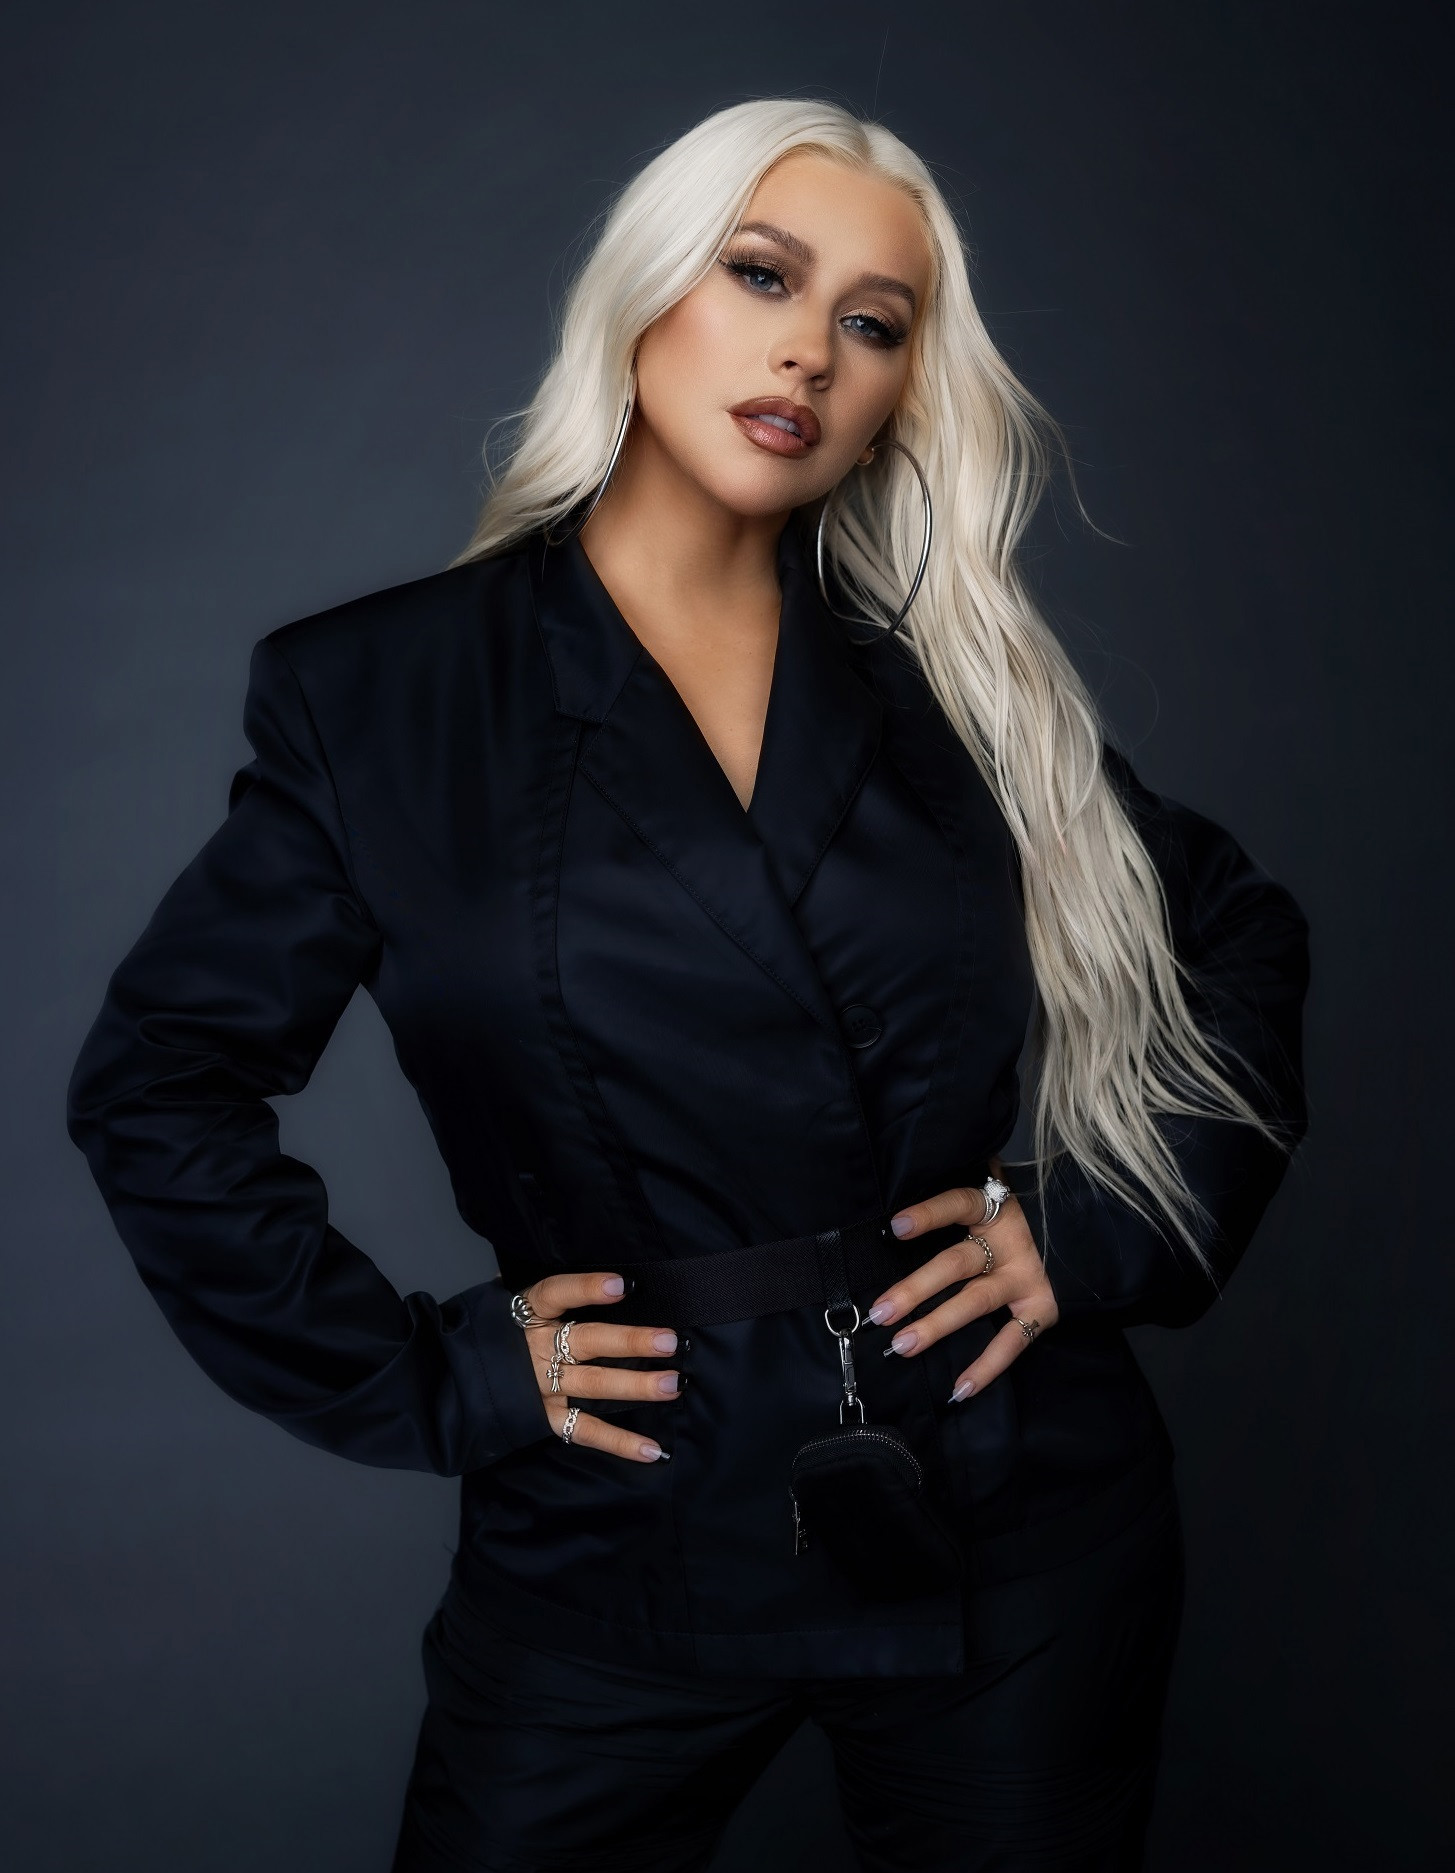 Ca sĩ Christina Aguilera sẽ l&agrave; một trong những nghệ sĩ g&oacute;p mặt trong phần biểu diễn nghệ thuật đỉnh cao được thiết kế ri&ecirc;ng cho buổi lễ - H&igrave;nh ảnh bởi Courtesy of MasterClass. Ảnh: VIC.